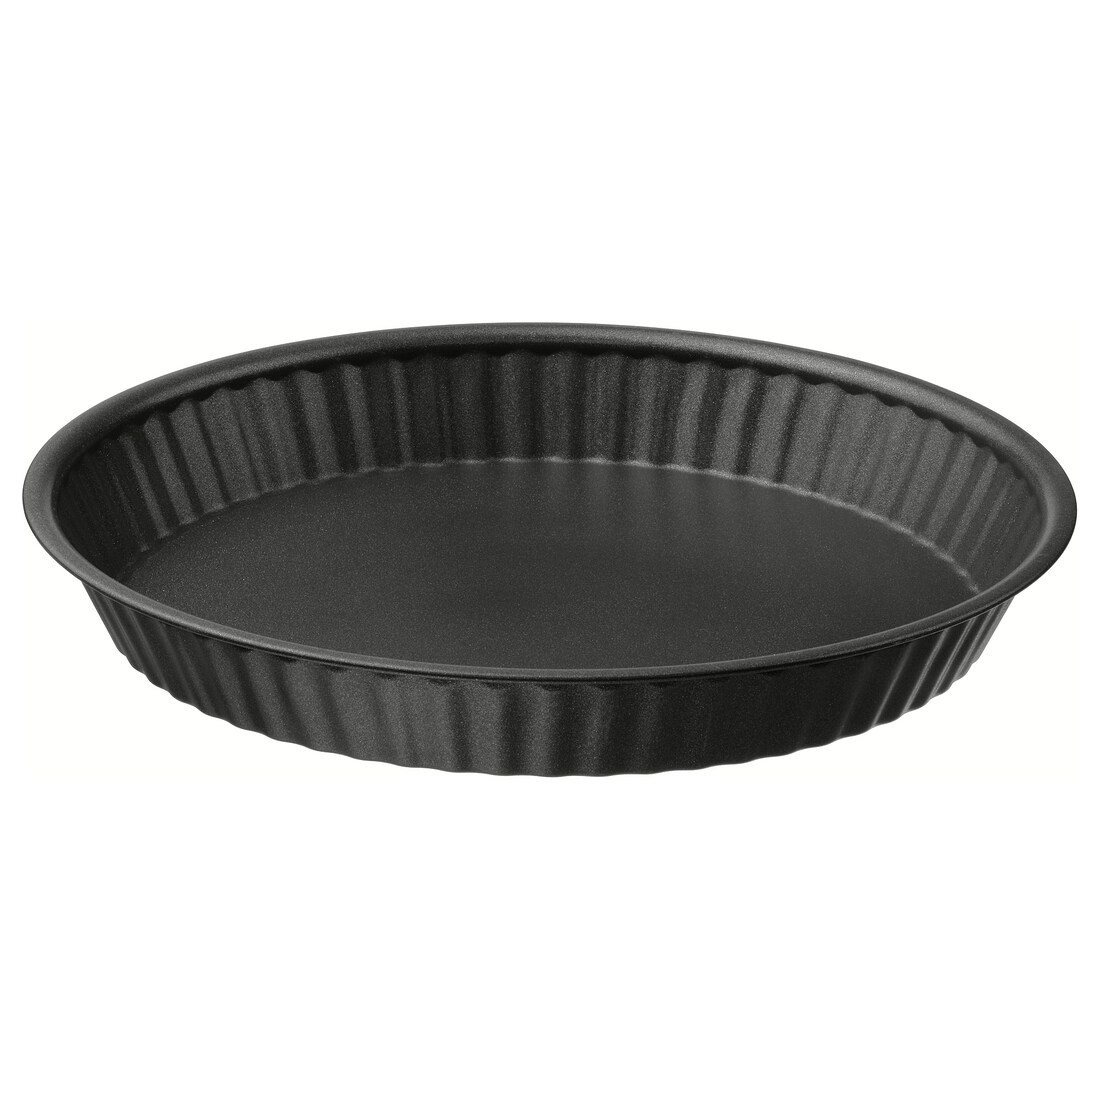 MÅNTAGG Форма для выпечки, антипригарное покрытие темно-серого цвета, 30 см